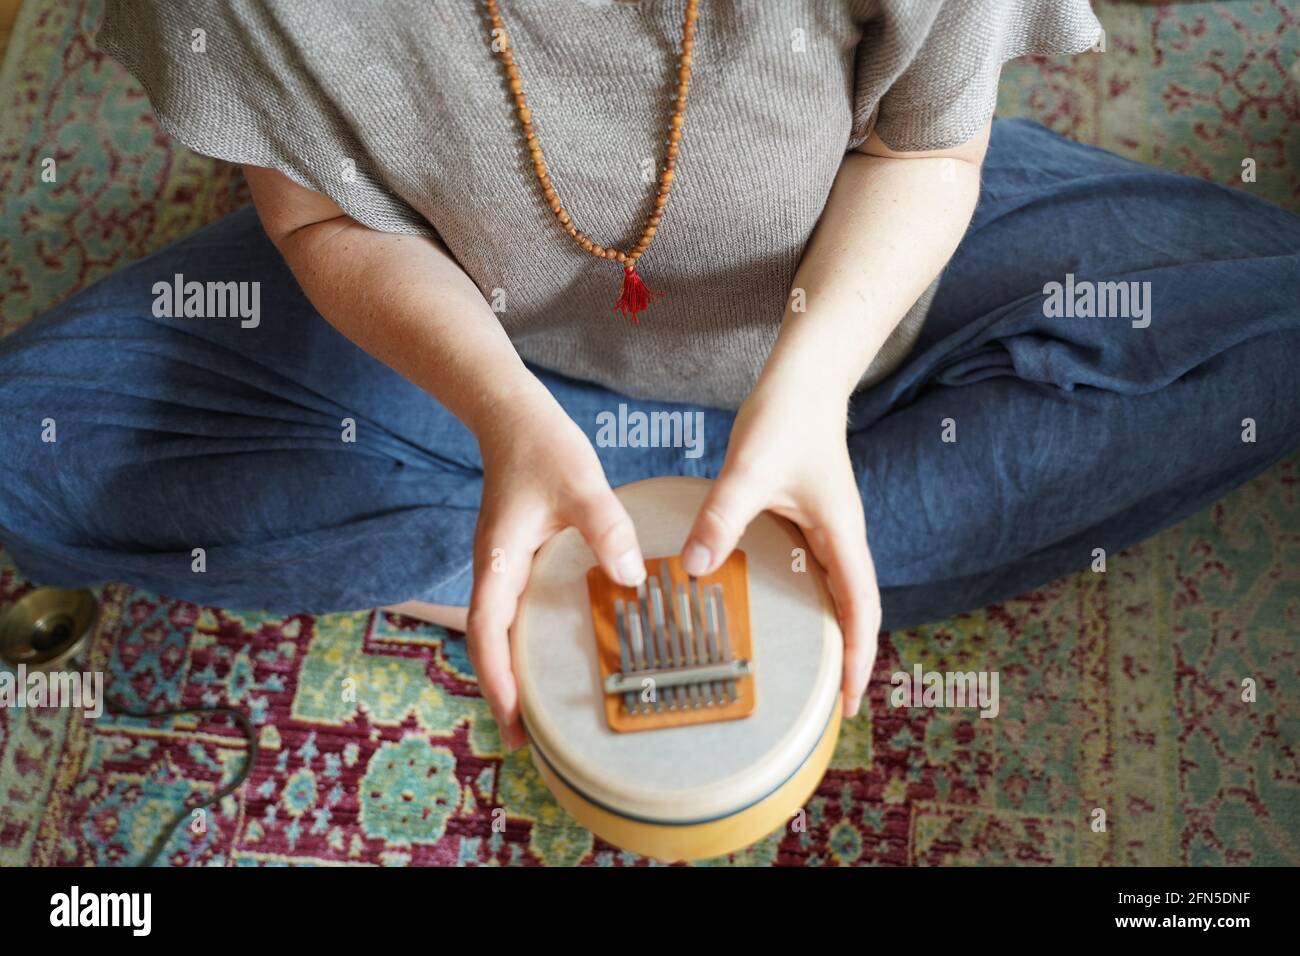 Frau, die ein Klangheilungsinstrument Sansula für die Klangheilung hält und spielt Stockfoto